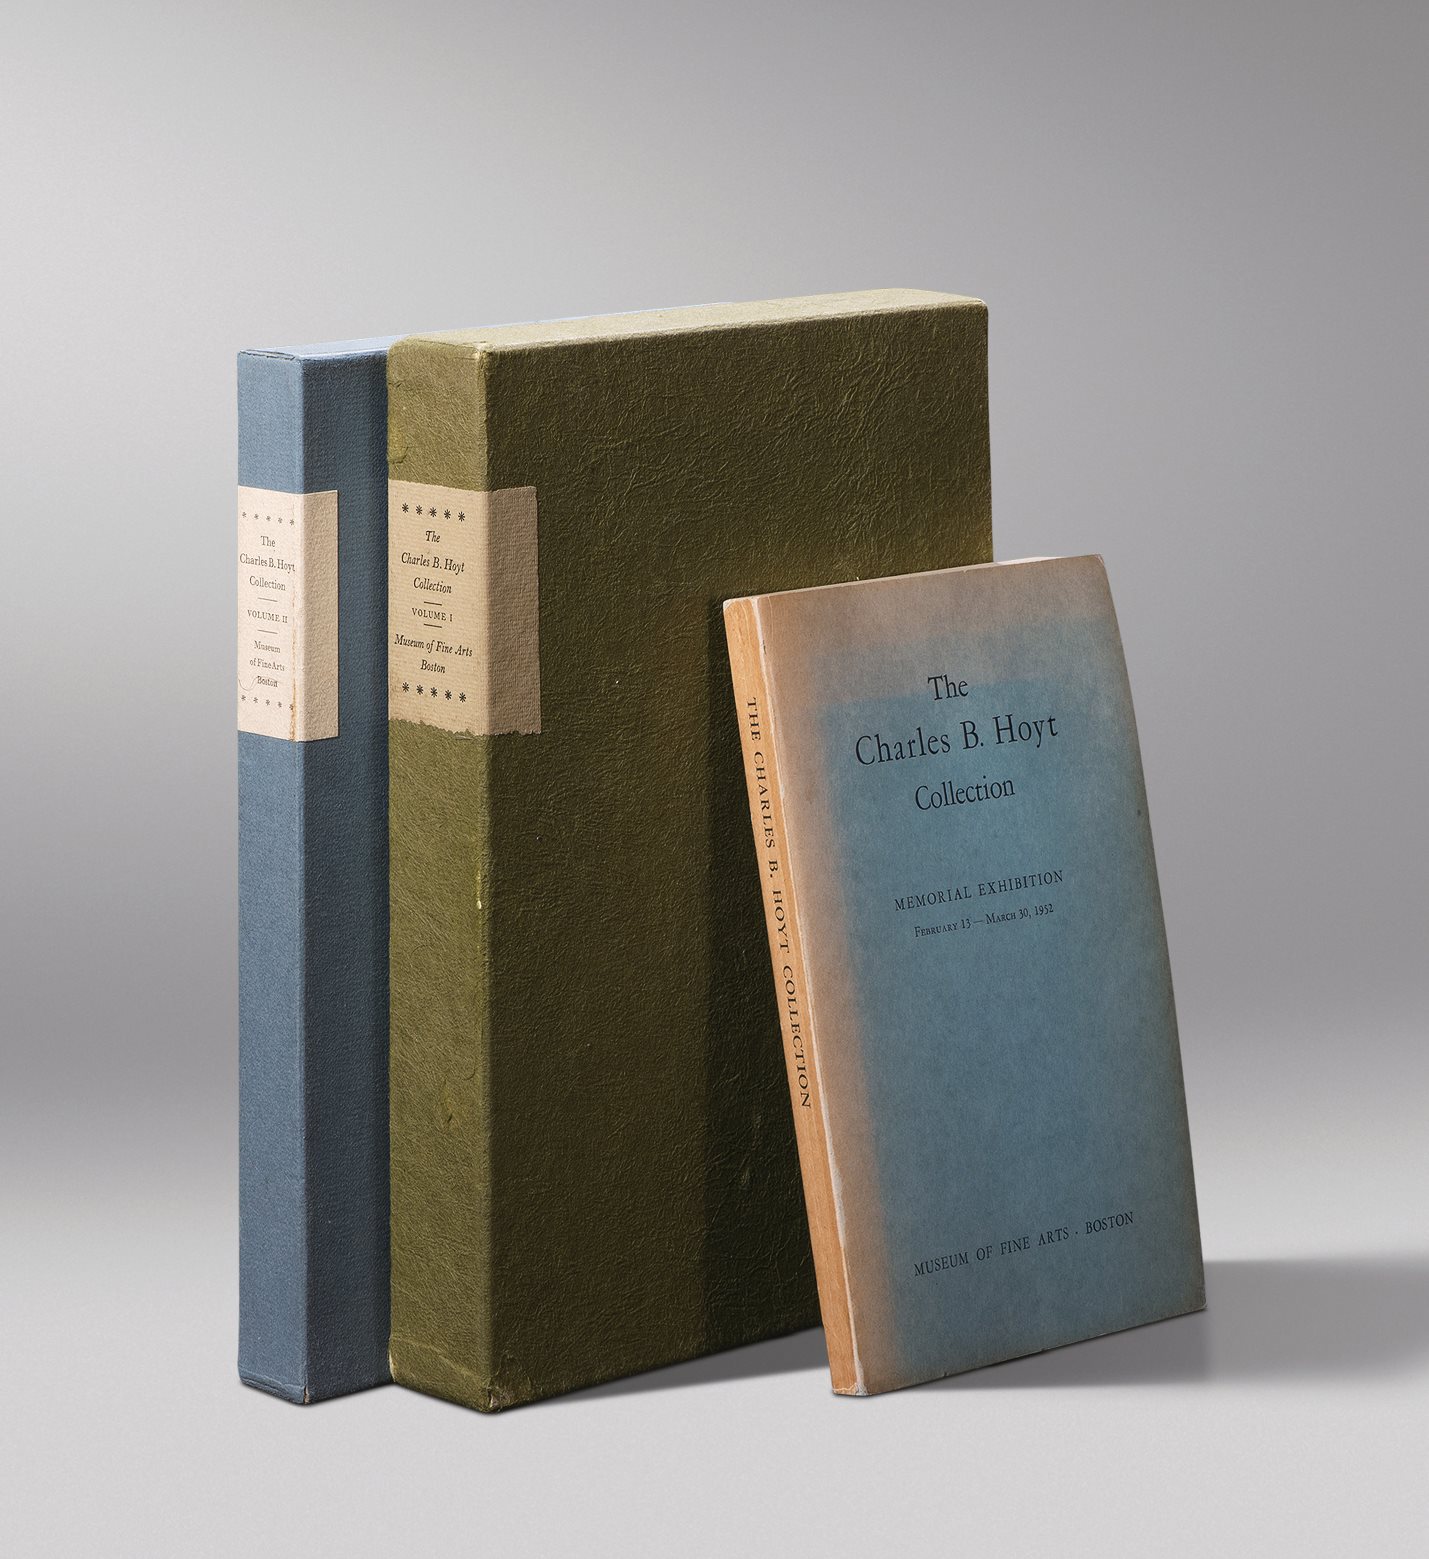 波士顿美术馆藏查尔斯·霍伊特珍藏品集三册